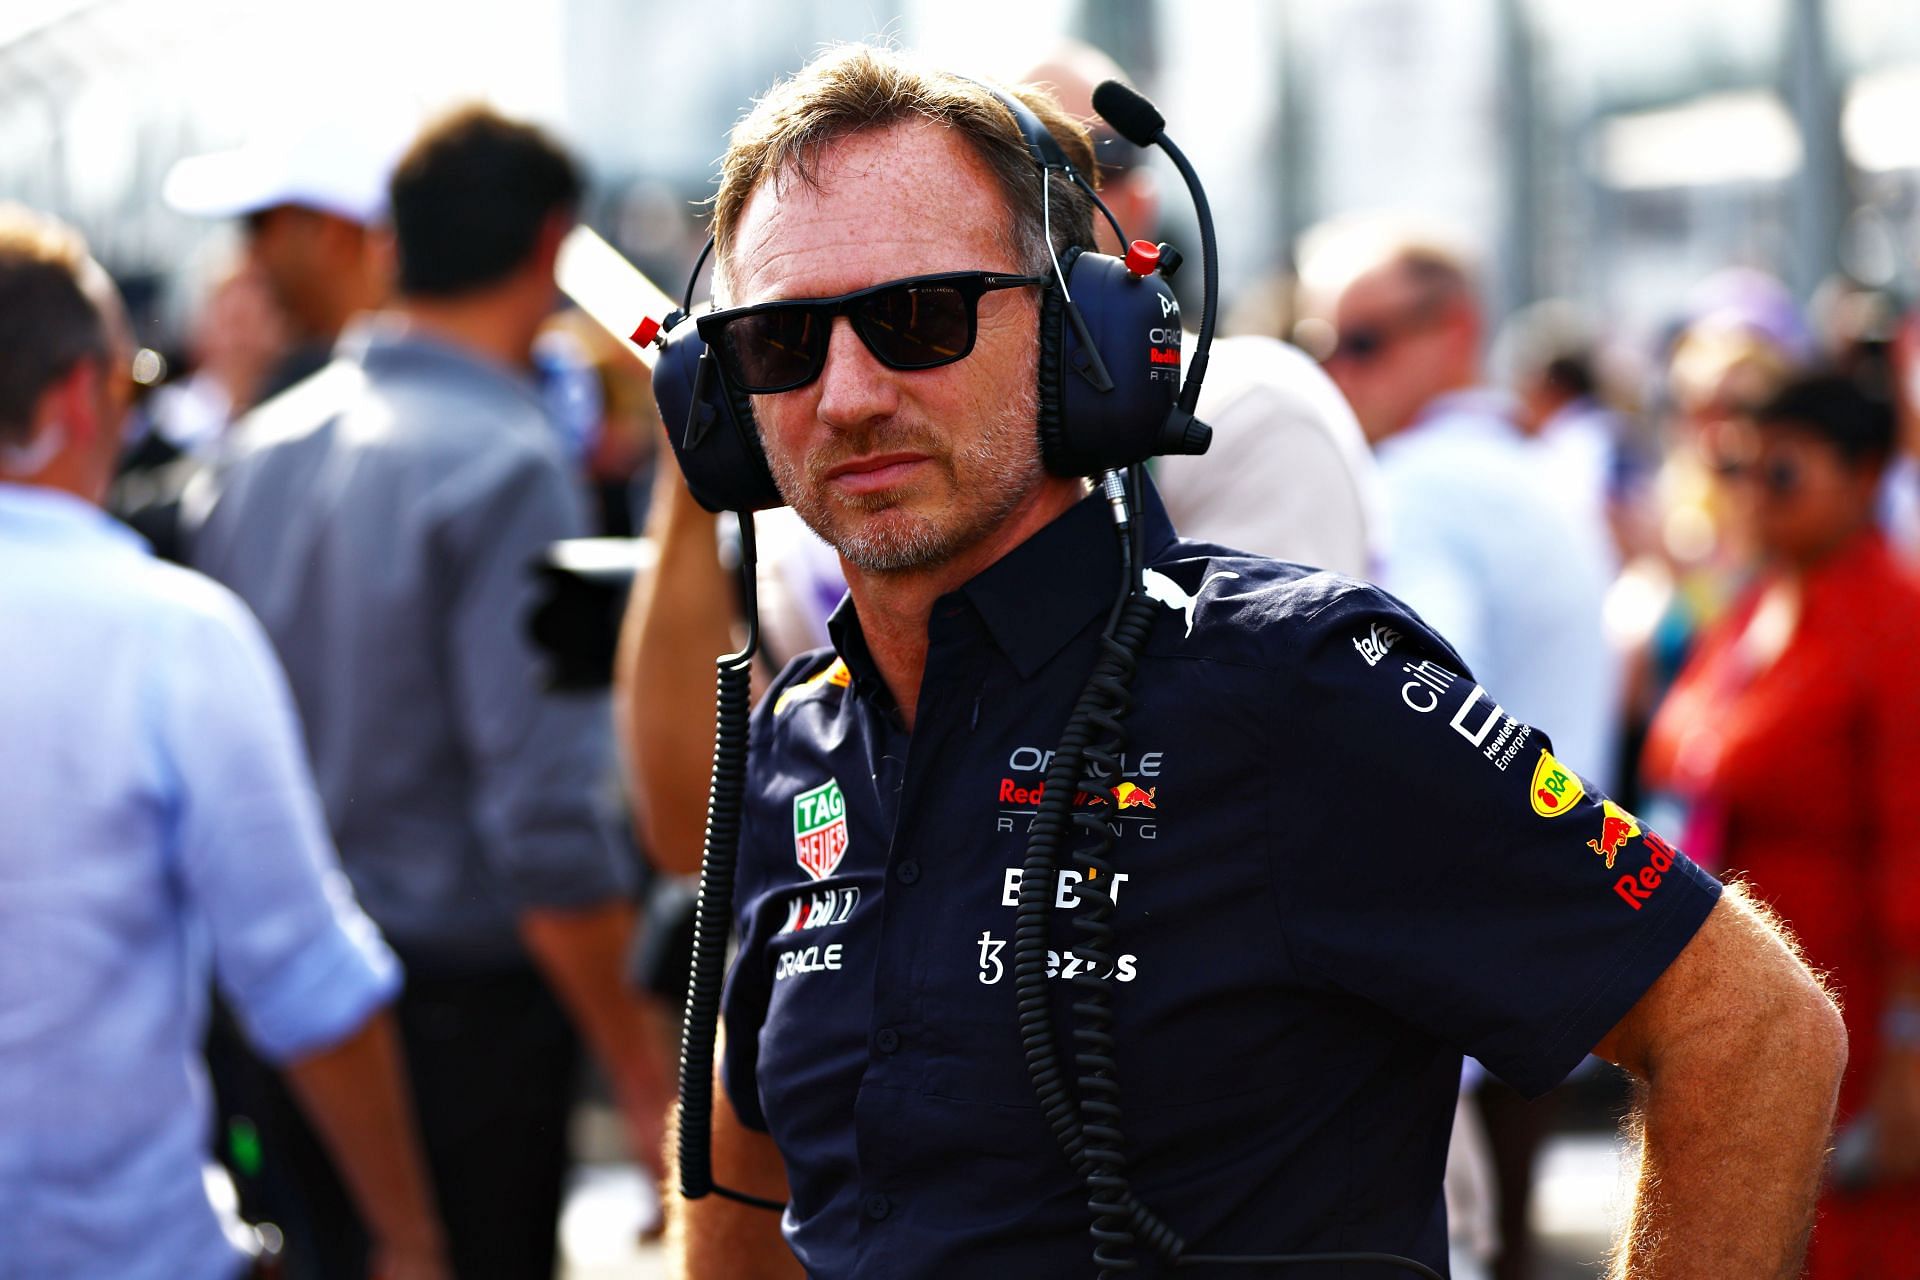 Chrisitan Horner, the team principal of Red Bull Racing at the 2022 Australian GP